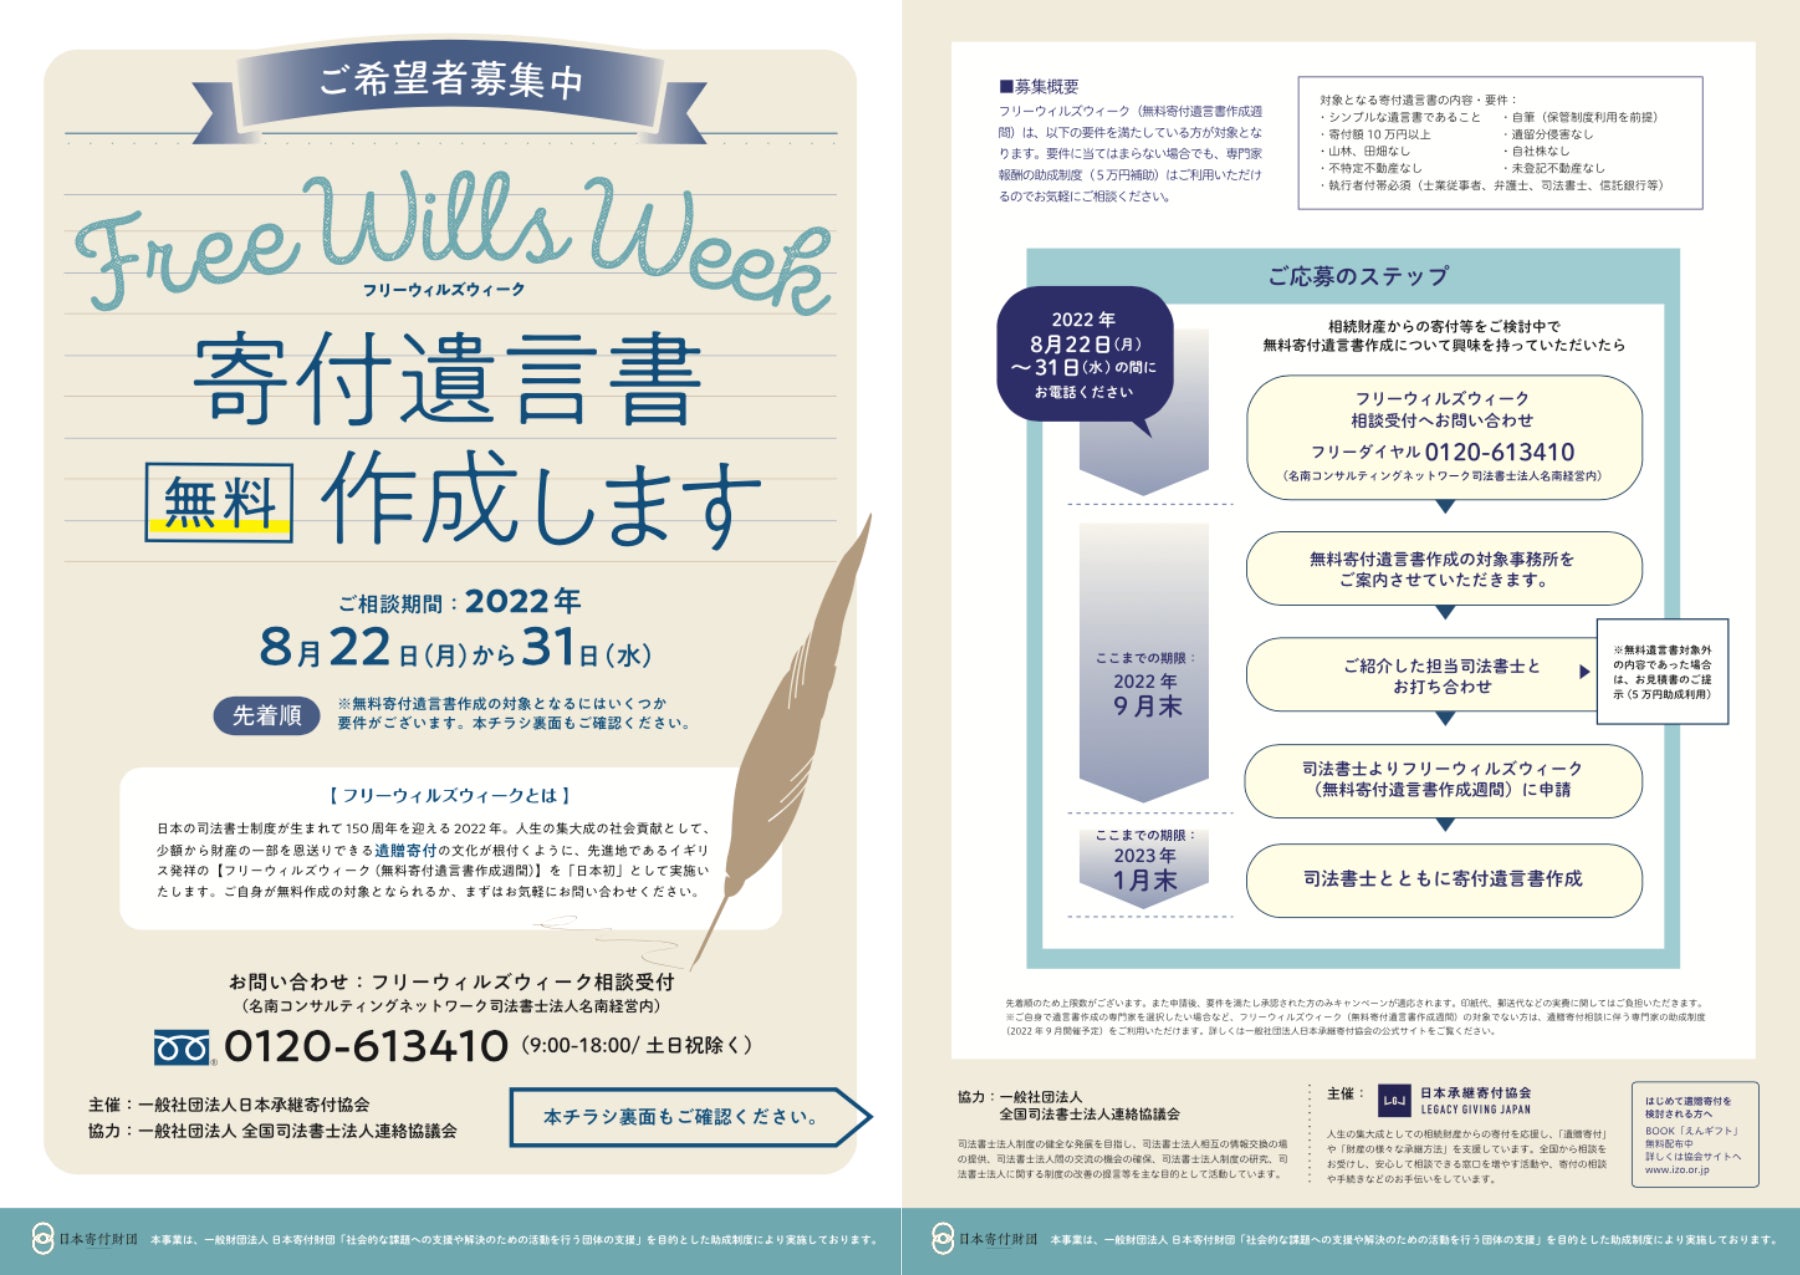 「日本初」遺贈寄付実現のための専門家報酬を助成するフリーウィルズキャンペーン。第1弾は2022年8月22日(月)〜8月31日(水)「無料」で開幕。のサブ画像2_フリーウィルズウィークフライヤー